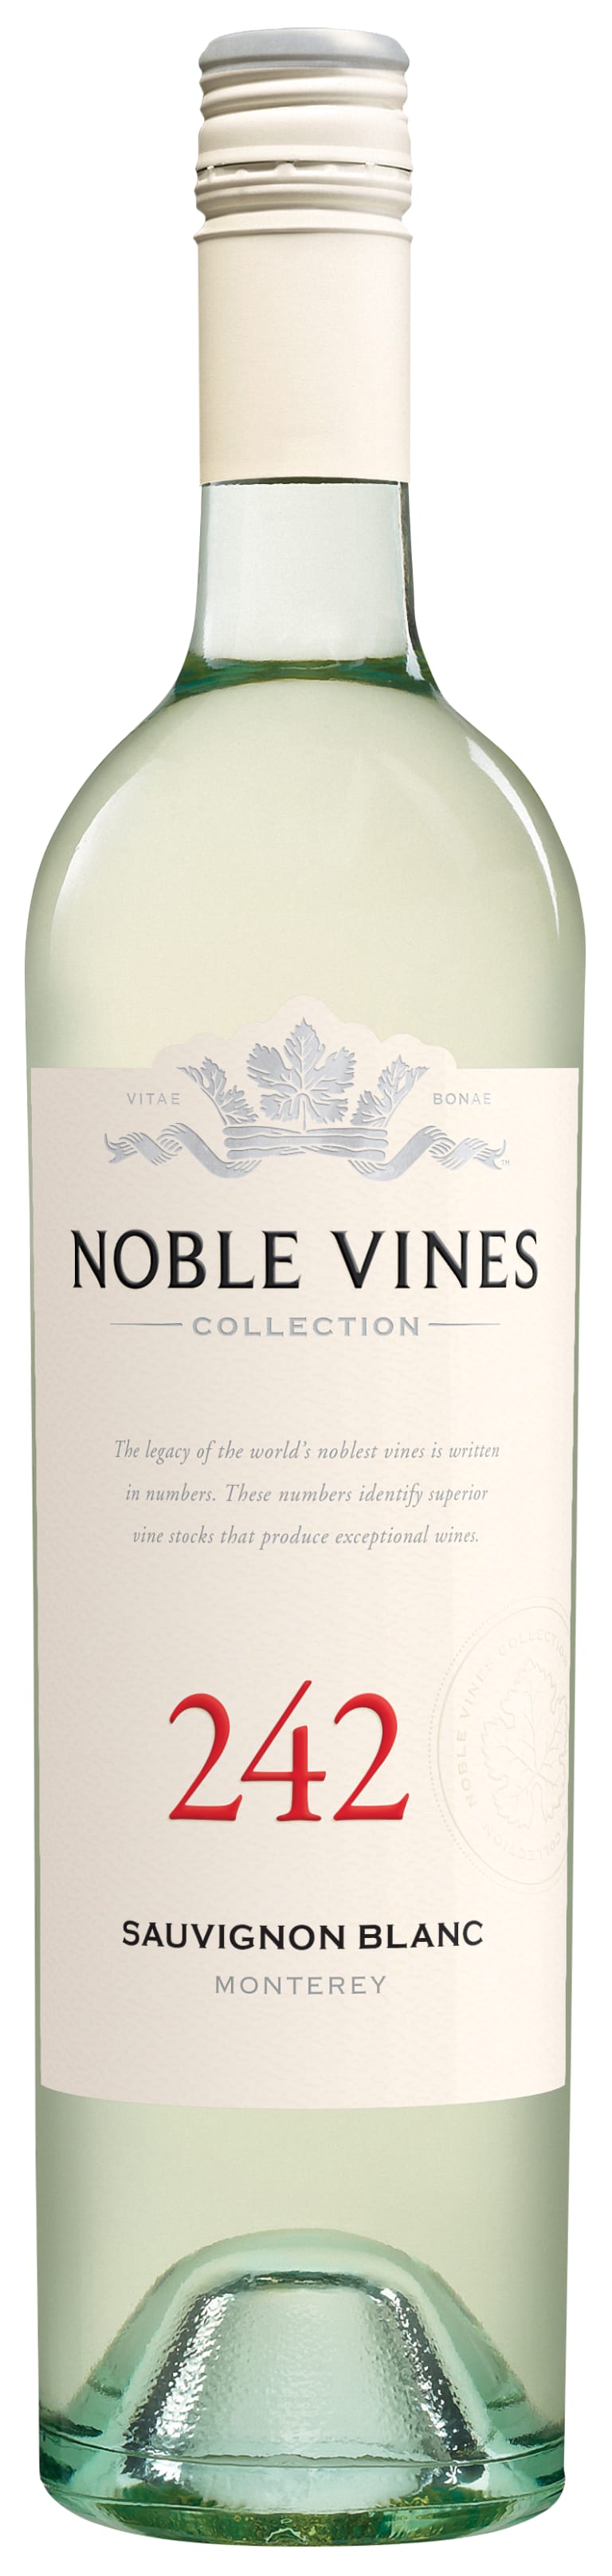 Noble Vines Sauvignon Blanc 242 2020